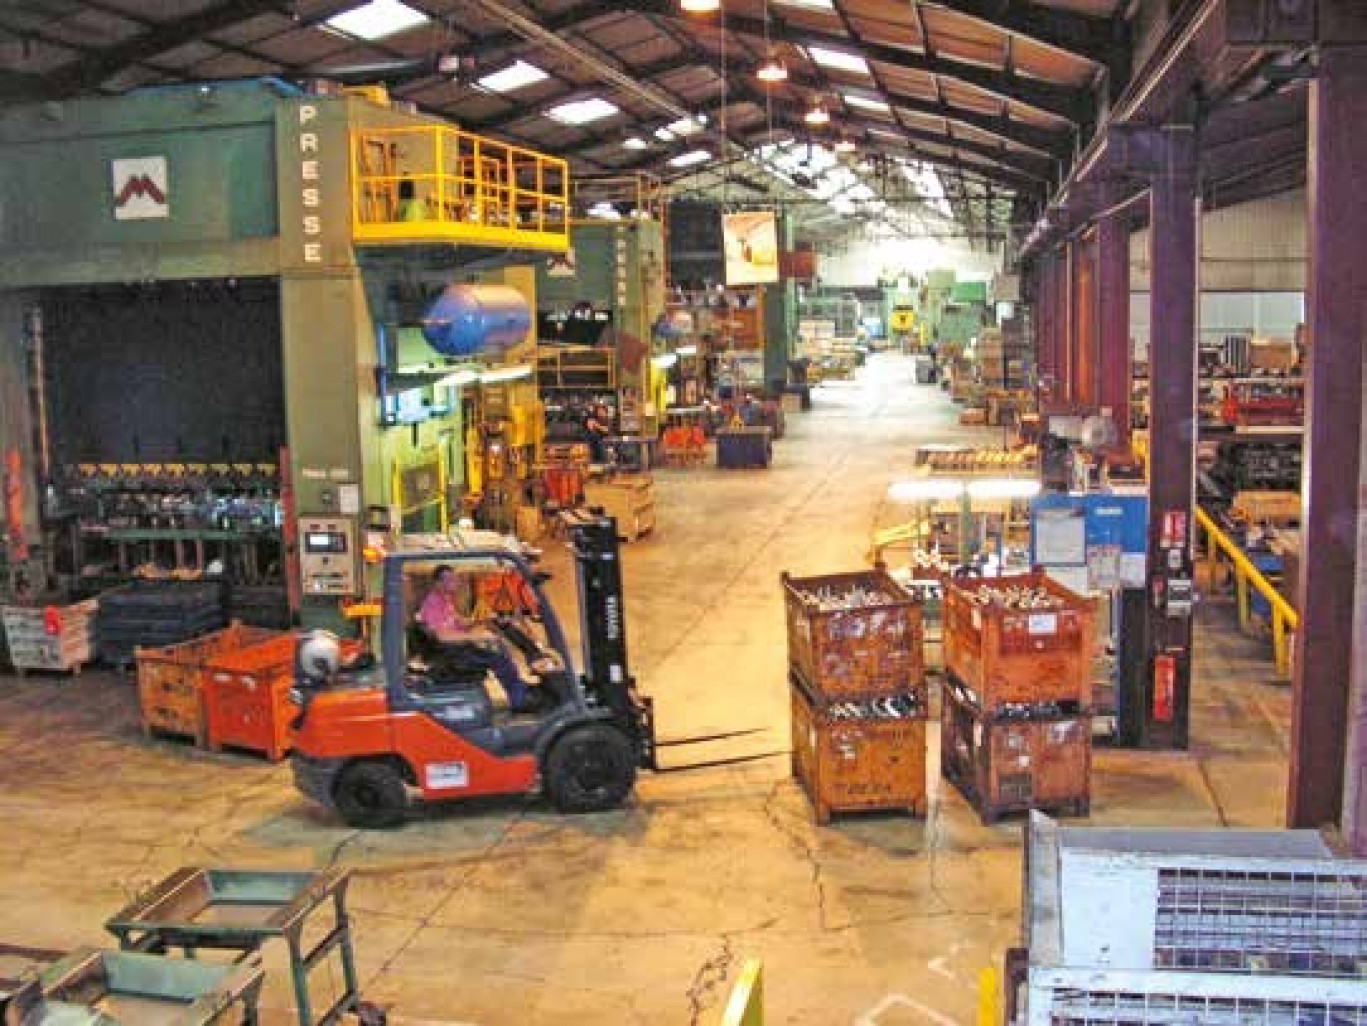 Une vue sur le vaste atelier où l’on dénombre toute une gamme de presses (à partir de 250 tonnes) et d’outillages associés ou annexes.